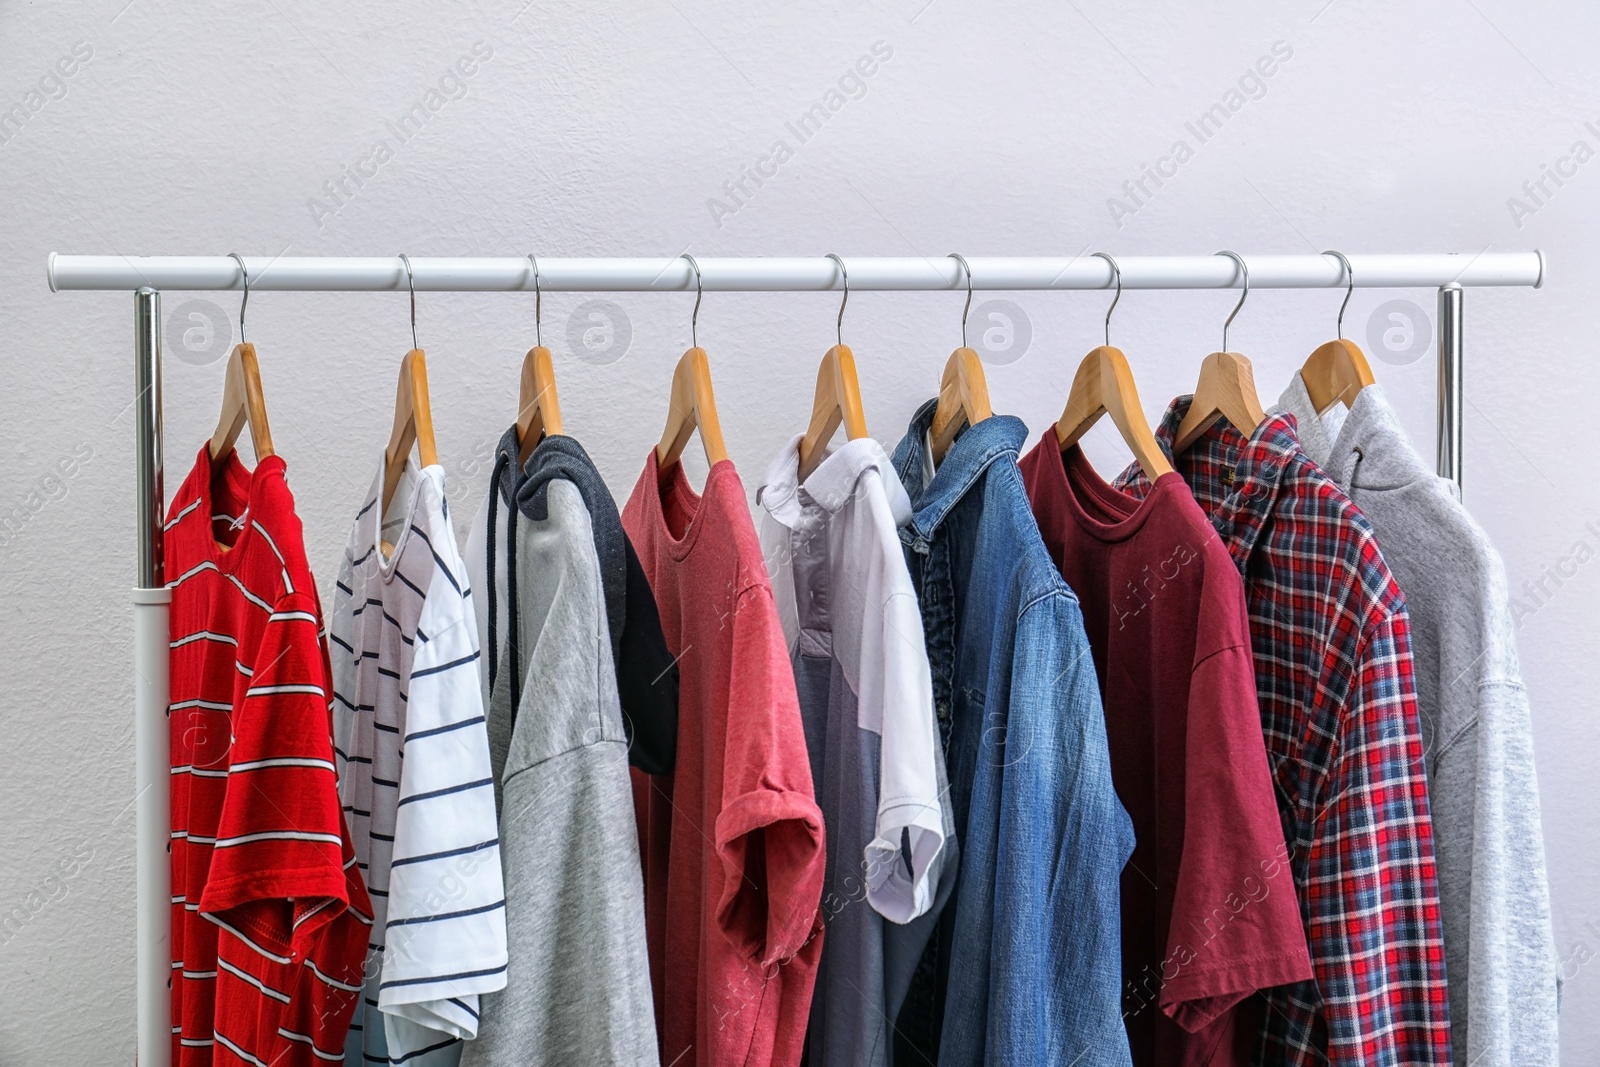 Photo of Stylish clothes hanging on wardrobe rack against light background